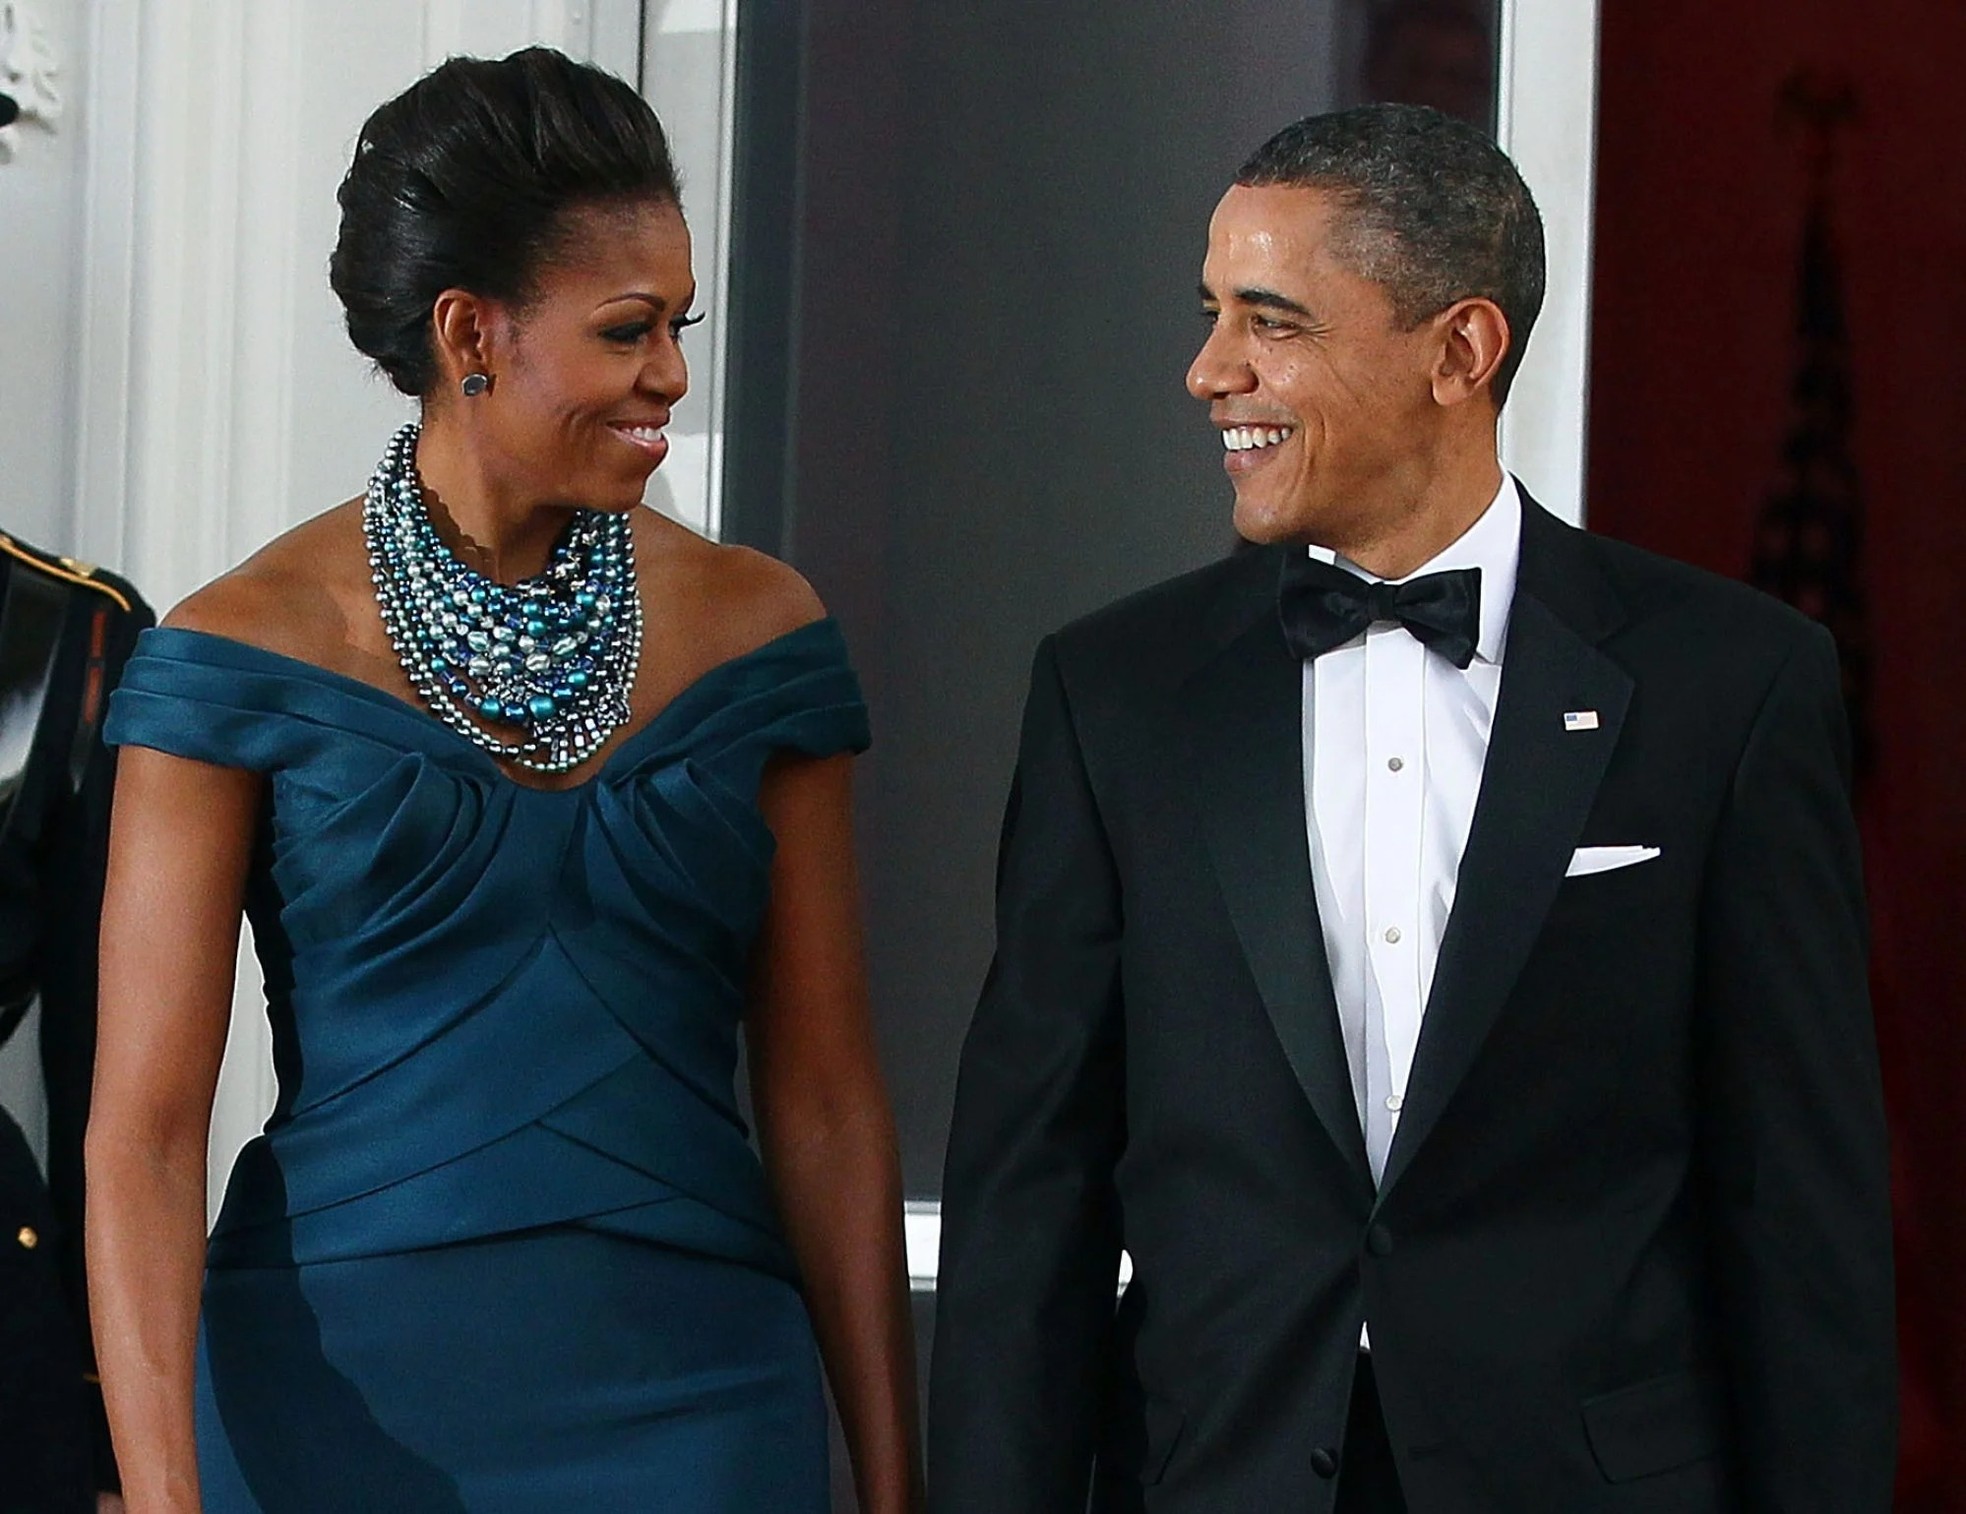 Vợ chồng ông Obama kiếm tiền bằng cách nào sau khi rời Nhà Trắng? - Ảnh 1.